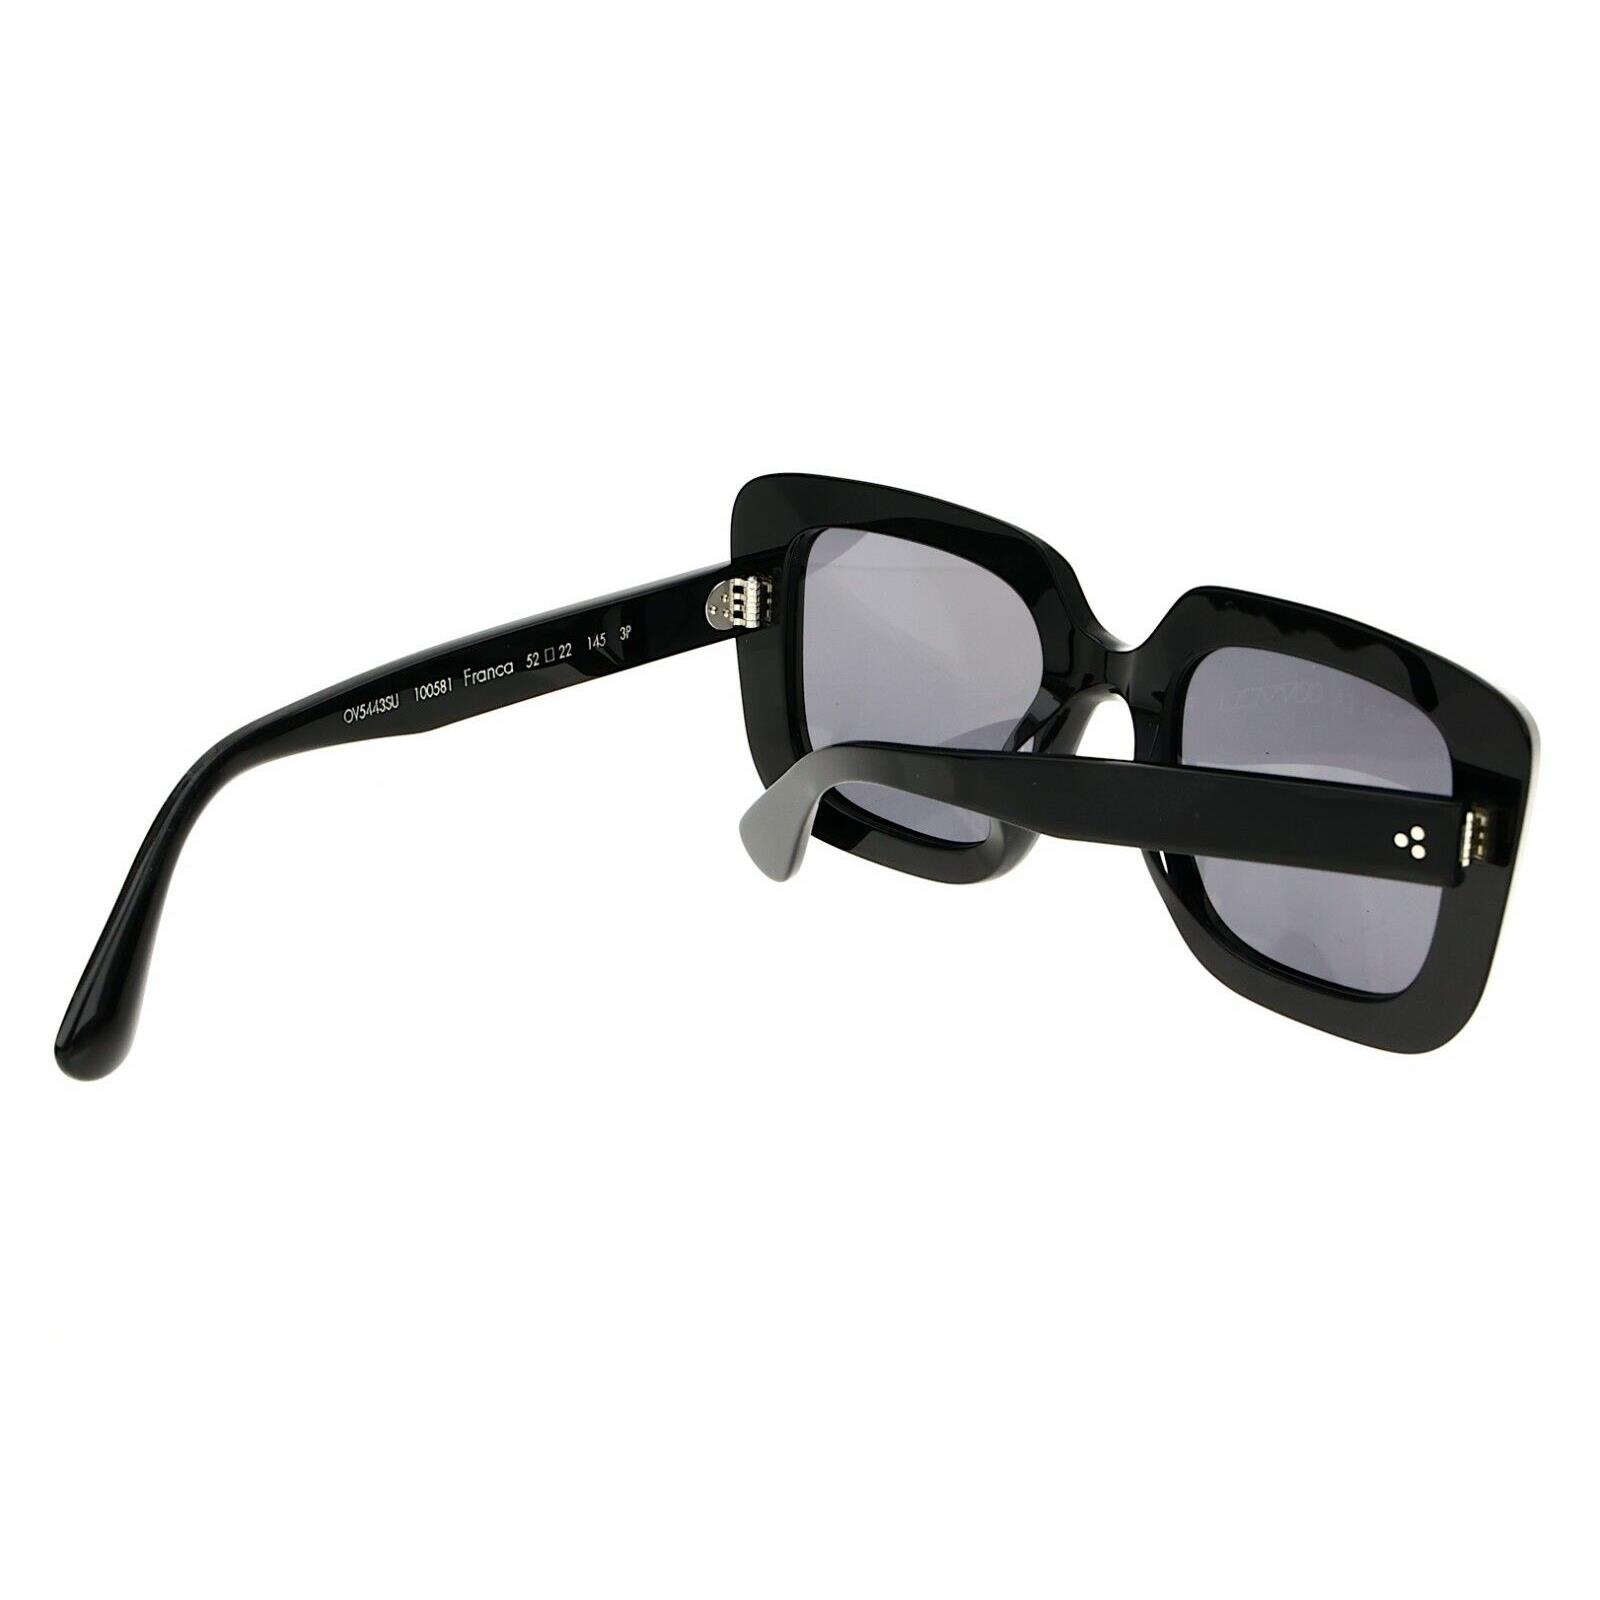 Oliver Peoples Franca 52mm Polarized Black Oversized Square Sunglasses  S3021 - Oliver Peoples sunglasses - 827934451391 | Fash Brands